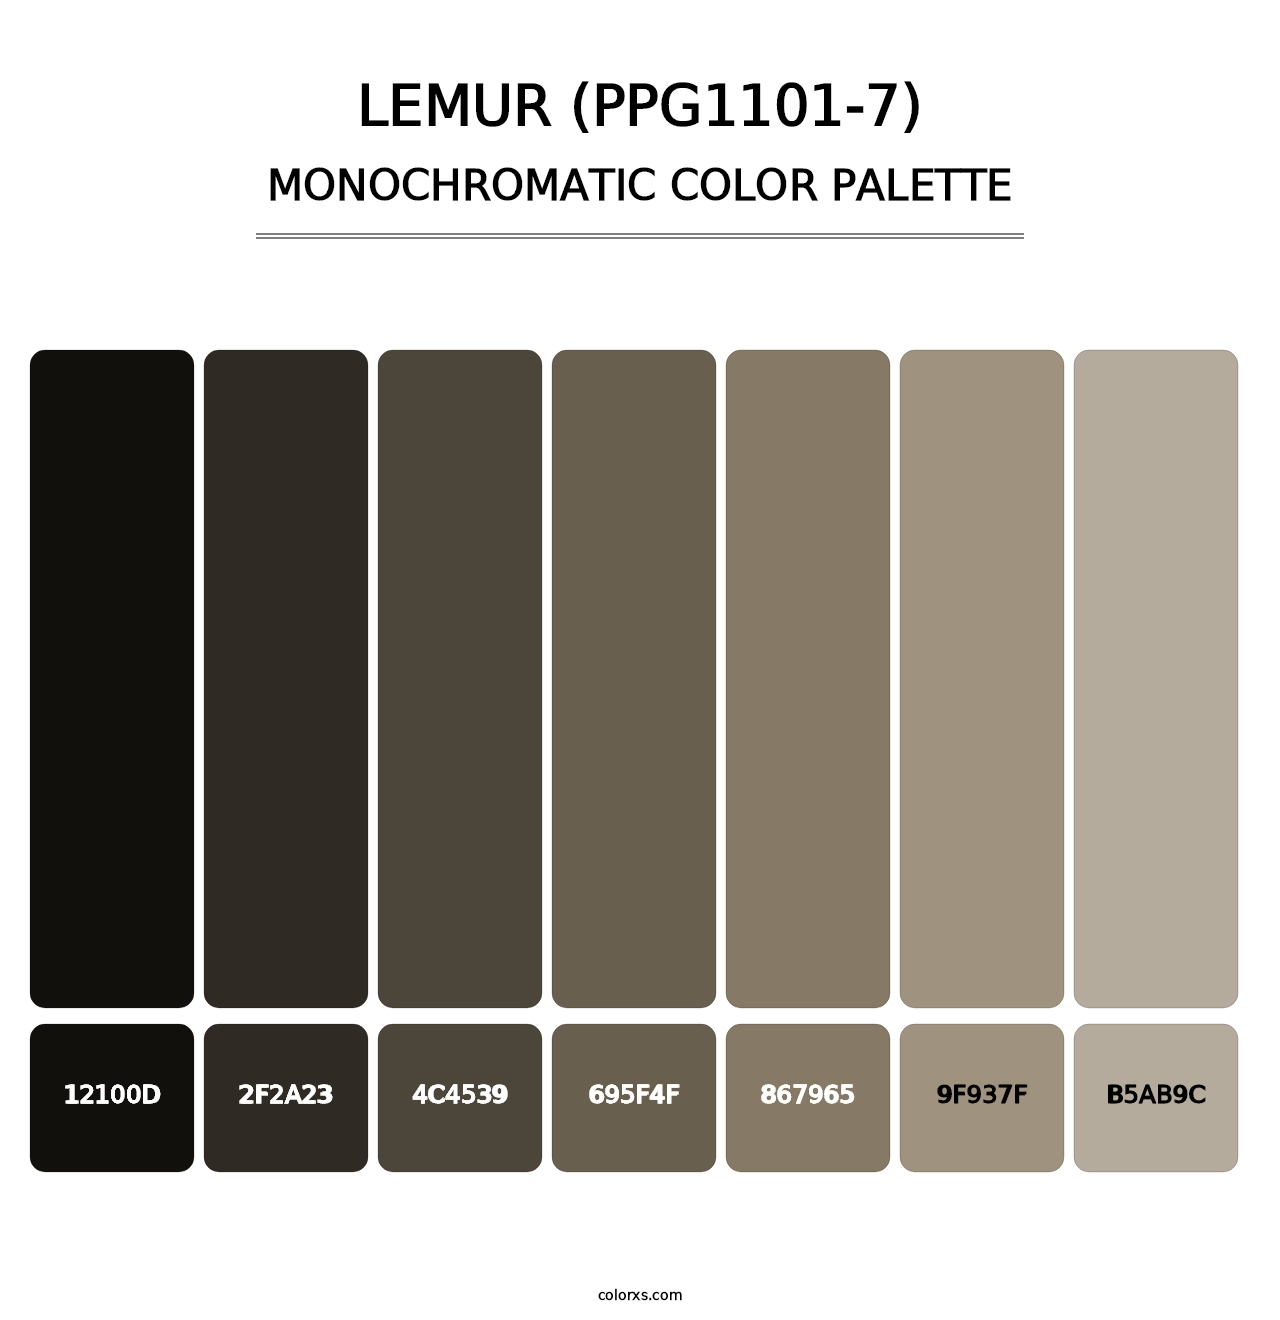 Lemur (PPG1101-7) - Monochromatic Color Palette